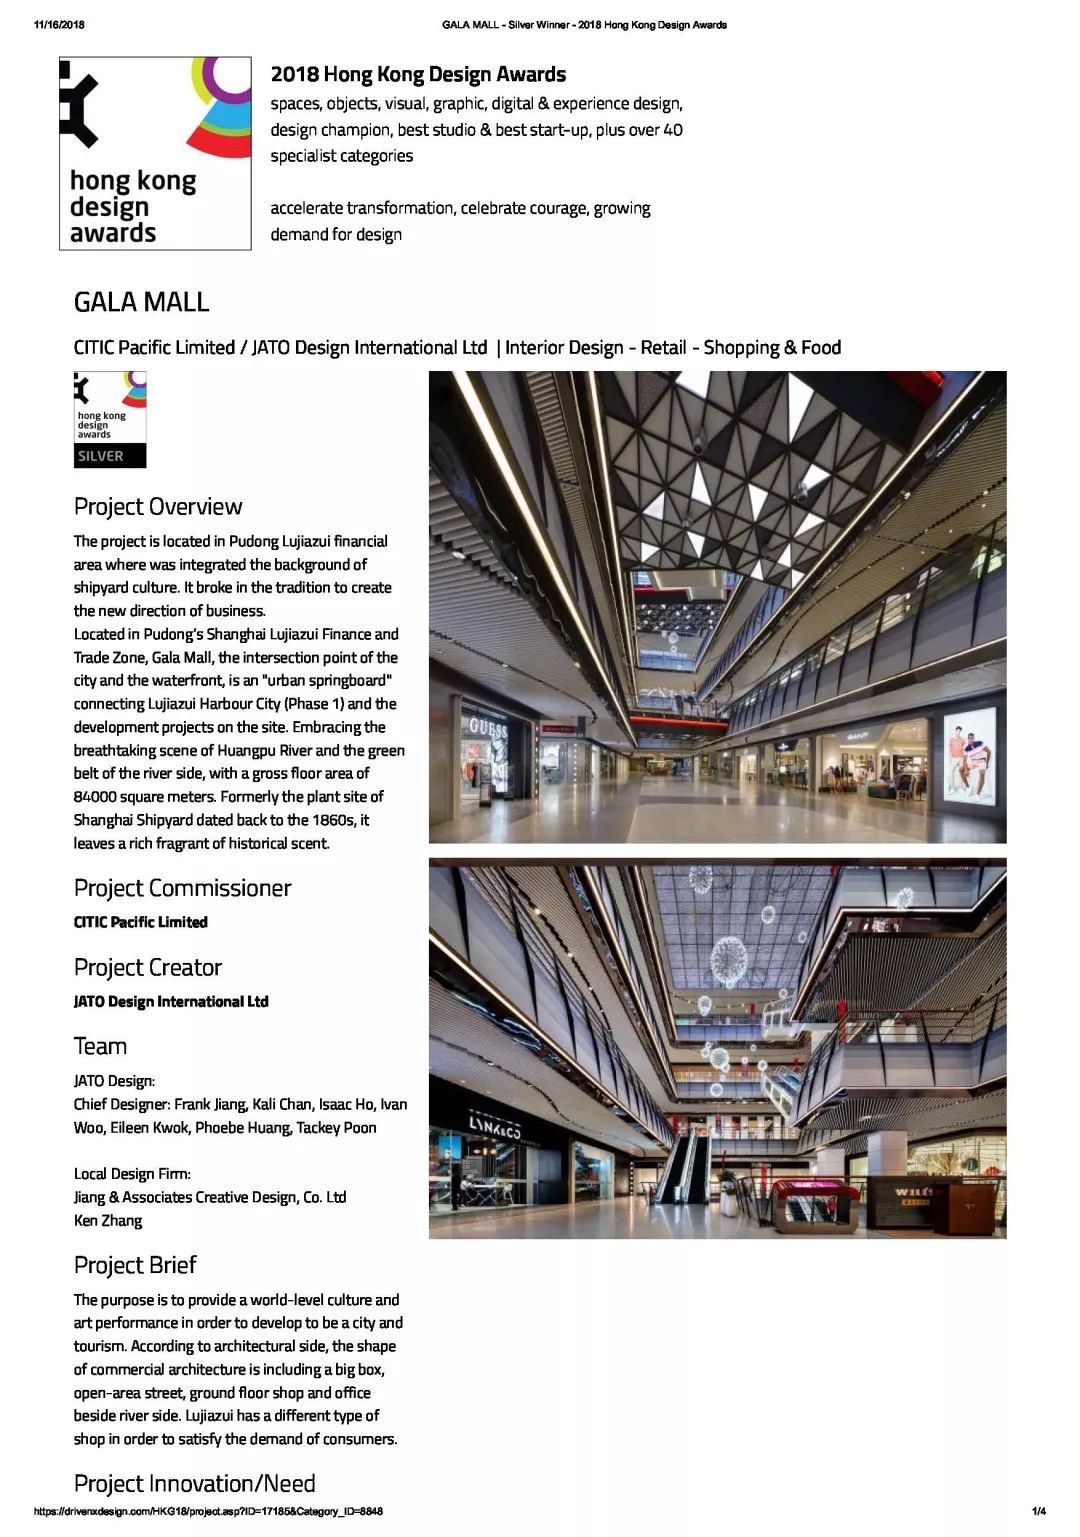 GALA MALL, created by J&A and its Hong Kong wholly-owned subsidiary JATO, won the 2018 Hong Kong Design Awards!